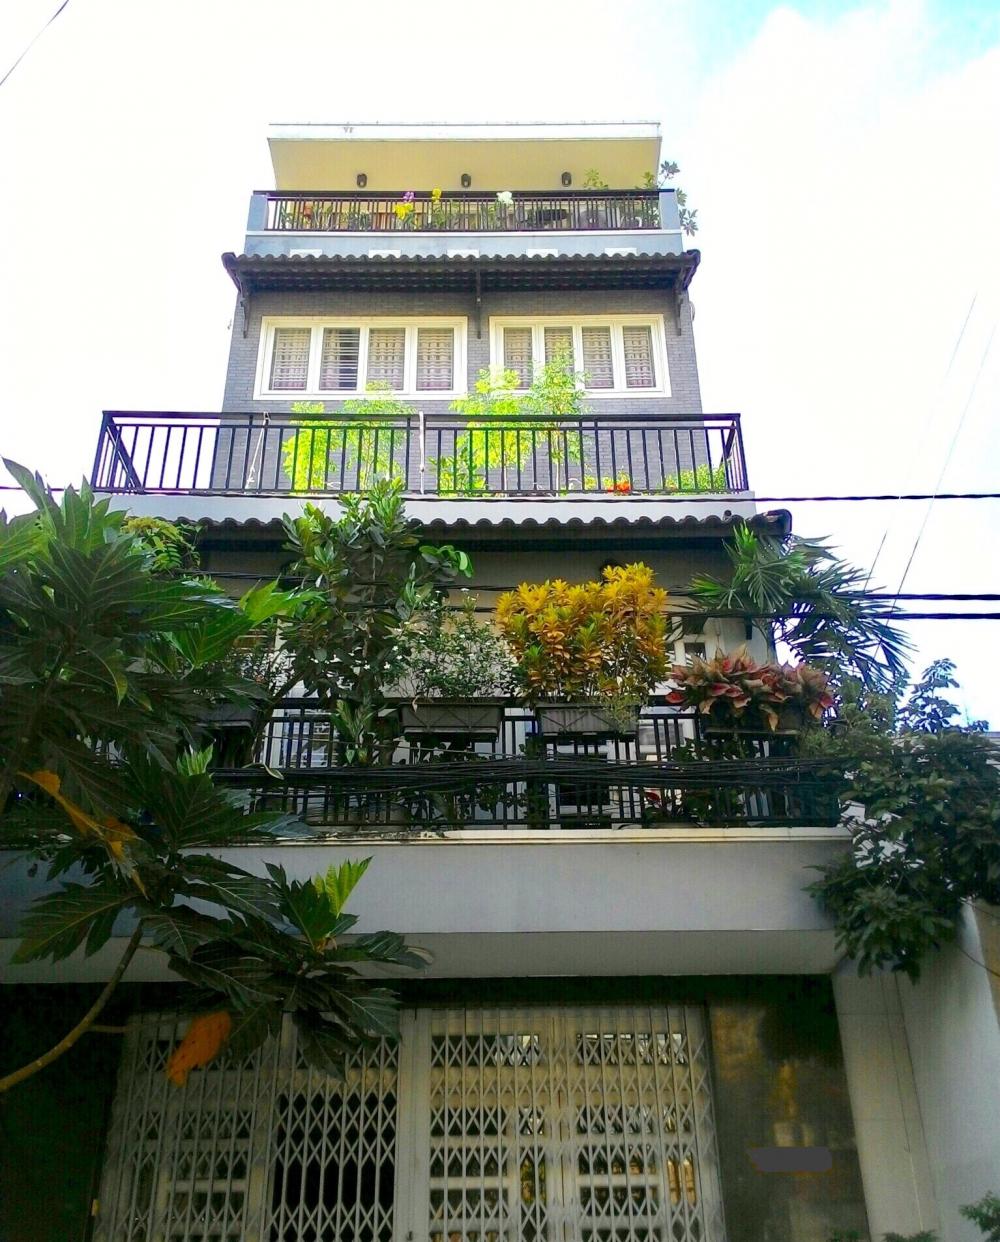  Bán nhà mặt tiền đường K300 quận Tân Bình, DT 5x22m, 3 lầu. Giá 15,4 tỷ TL, LH 0911626369